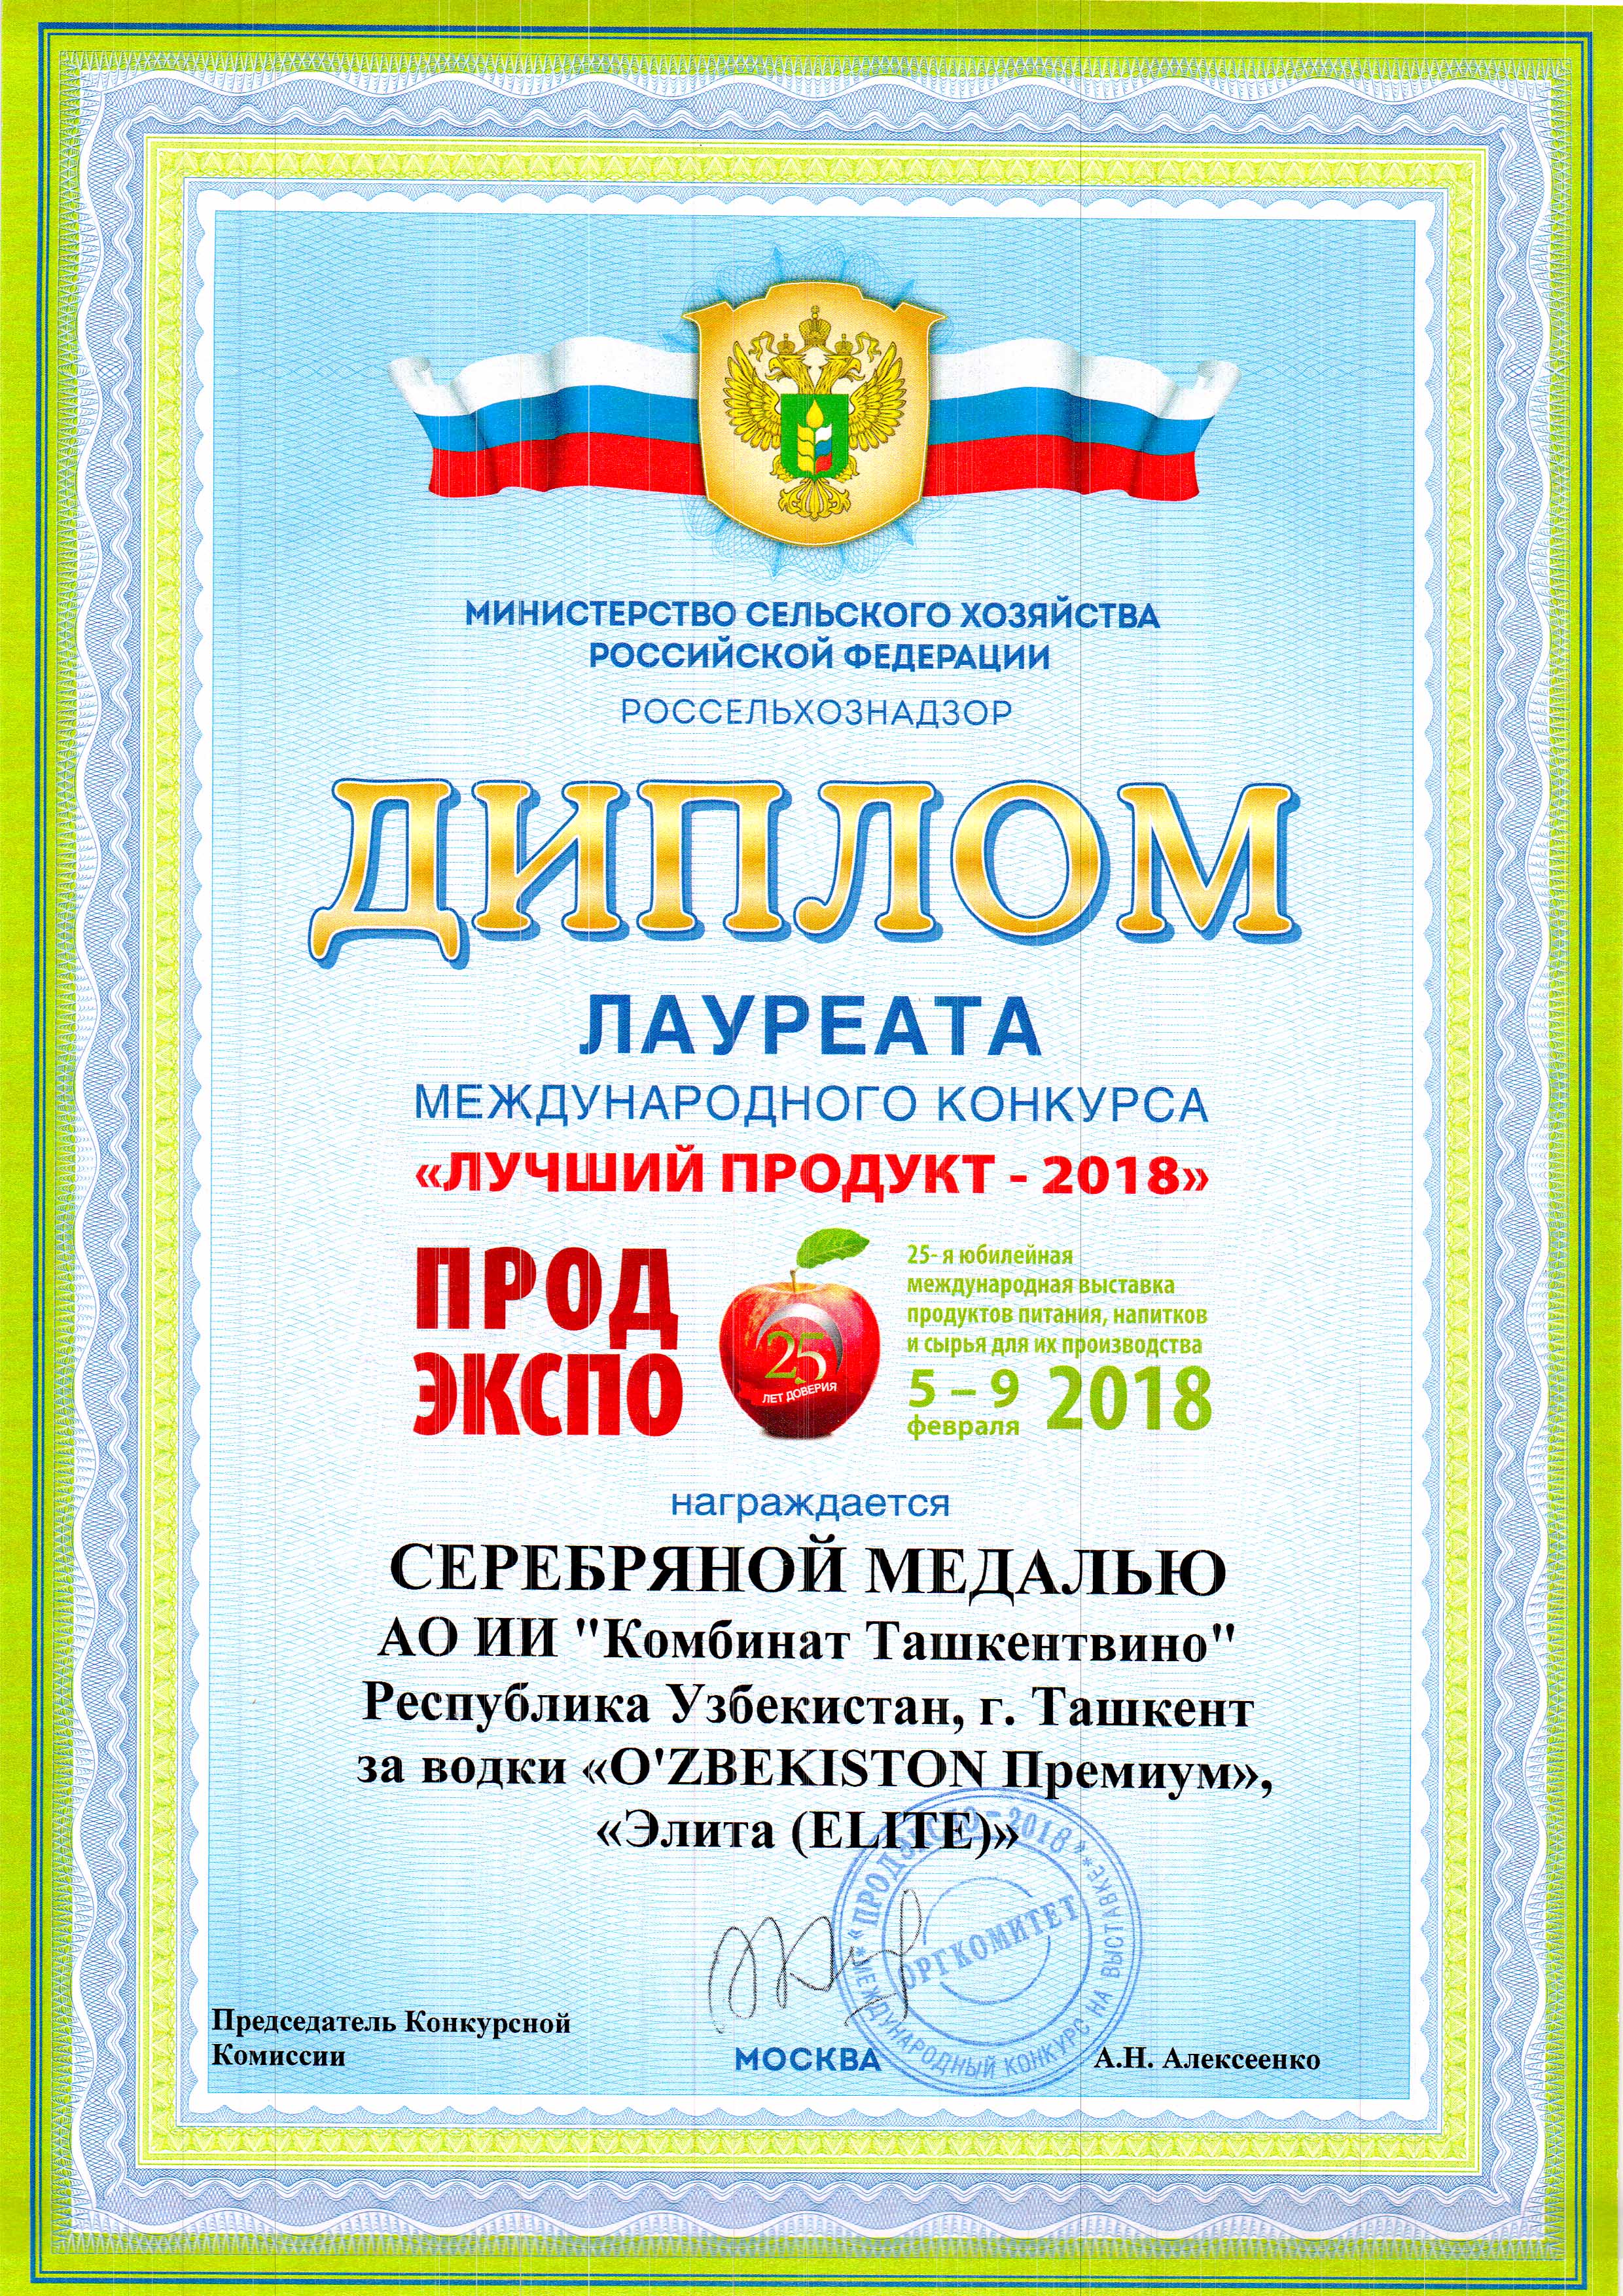 Серебряная медаль 2018 - Водка Узбекистан  Премиум и Elite (Элита)